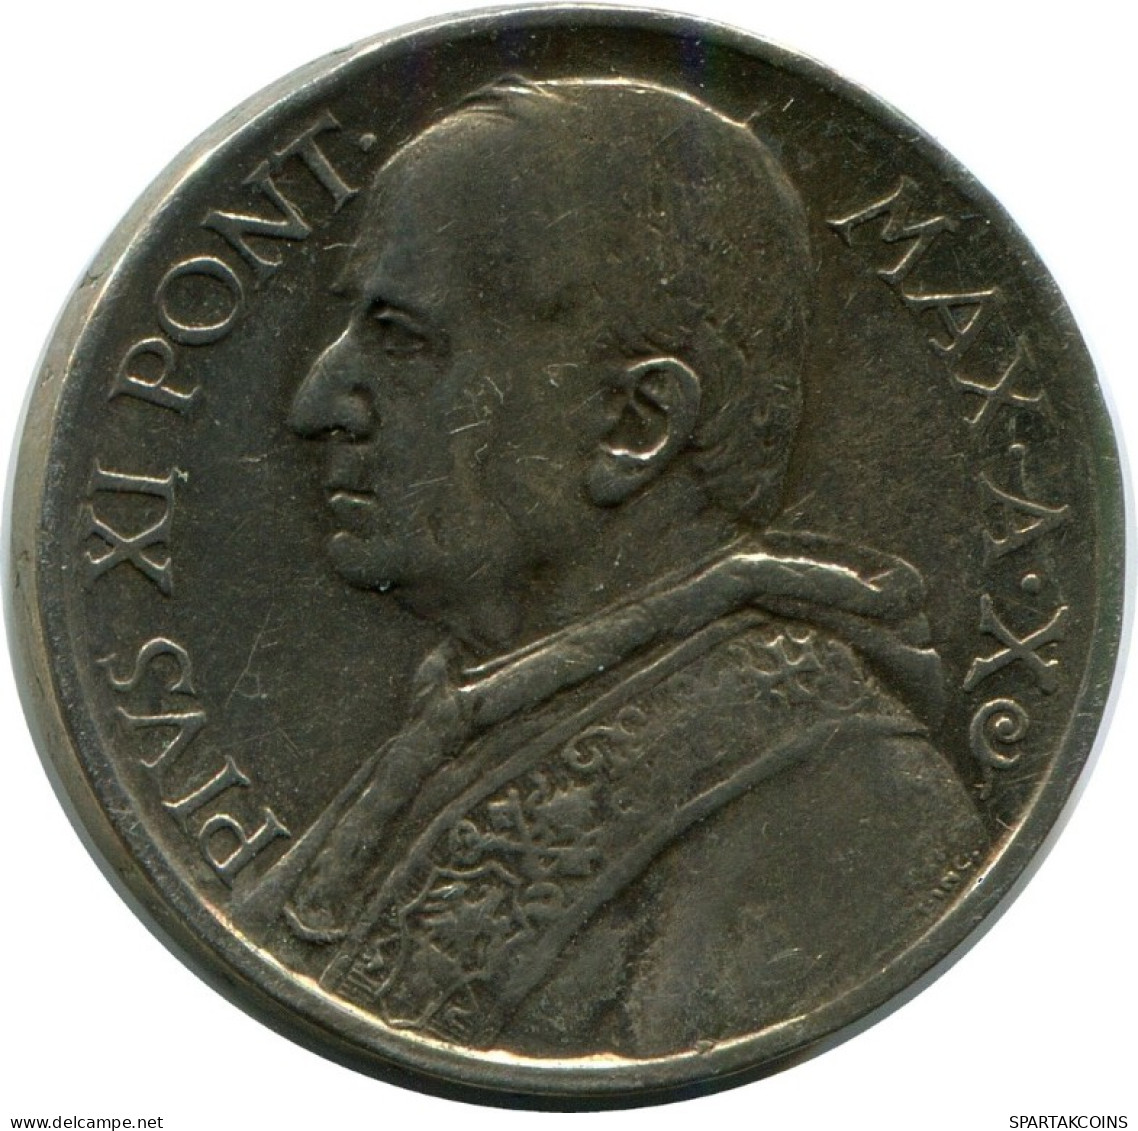 5 LIRE 1931 VATICAN Coin Pius XI (1922-1939) Silver #AH333.16.U.A - Vatican